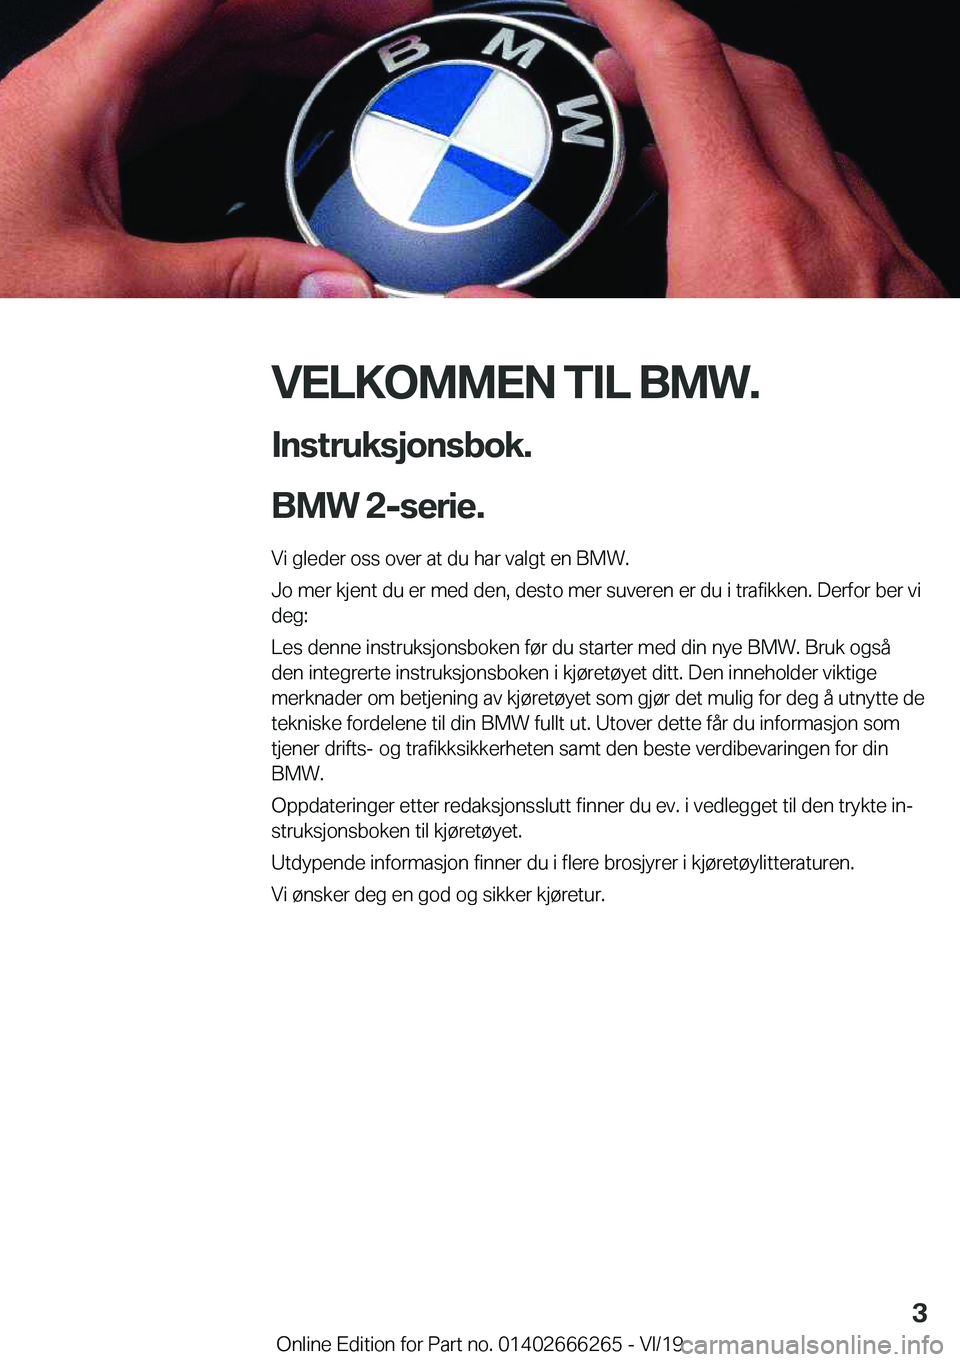 BMW 2 SERIES COUPE 2020  InstruksjonsbØker (in Norwegian) �V�E�L�K�O�M�M�E�N��T�I�L��B�M�W�.�I�n�s�t�r�u�k�s�j�o�n�s�b�o�k�.
�B�M�W��2�-�s�e�r�i�e�.�
�V�i��g�l�e�d�e�r��o�s�s��o�v�e�r��a�t��d�u��h�a�r��v�a�l�g�t��e�n��B�M�W�.
�J�o��m�e�r��k�j�